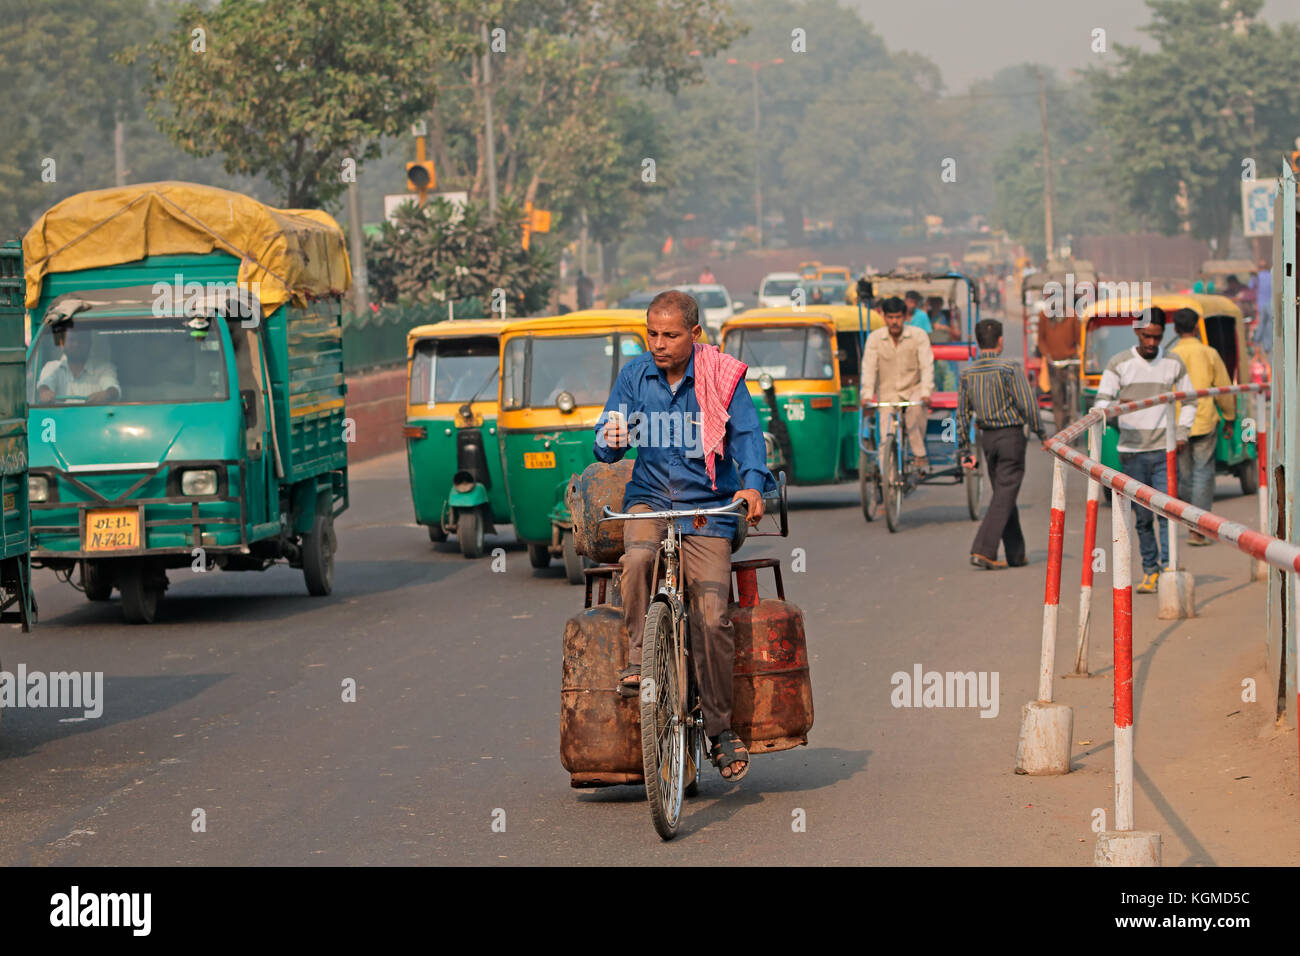 Delhi, India - 20 novembre 2015: uomo su una bicicletta nel traffico affollato con colorati di tuk-tuk veicoli e smog visibile dell'inquinamento atmosferico Foto Stock